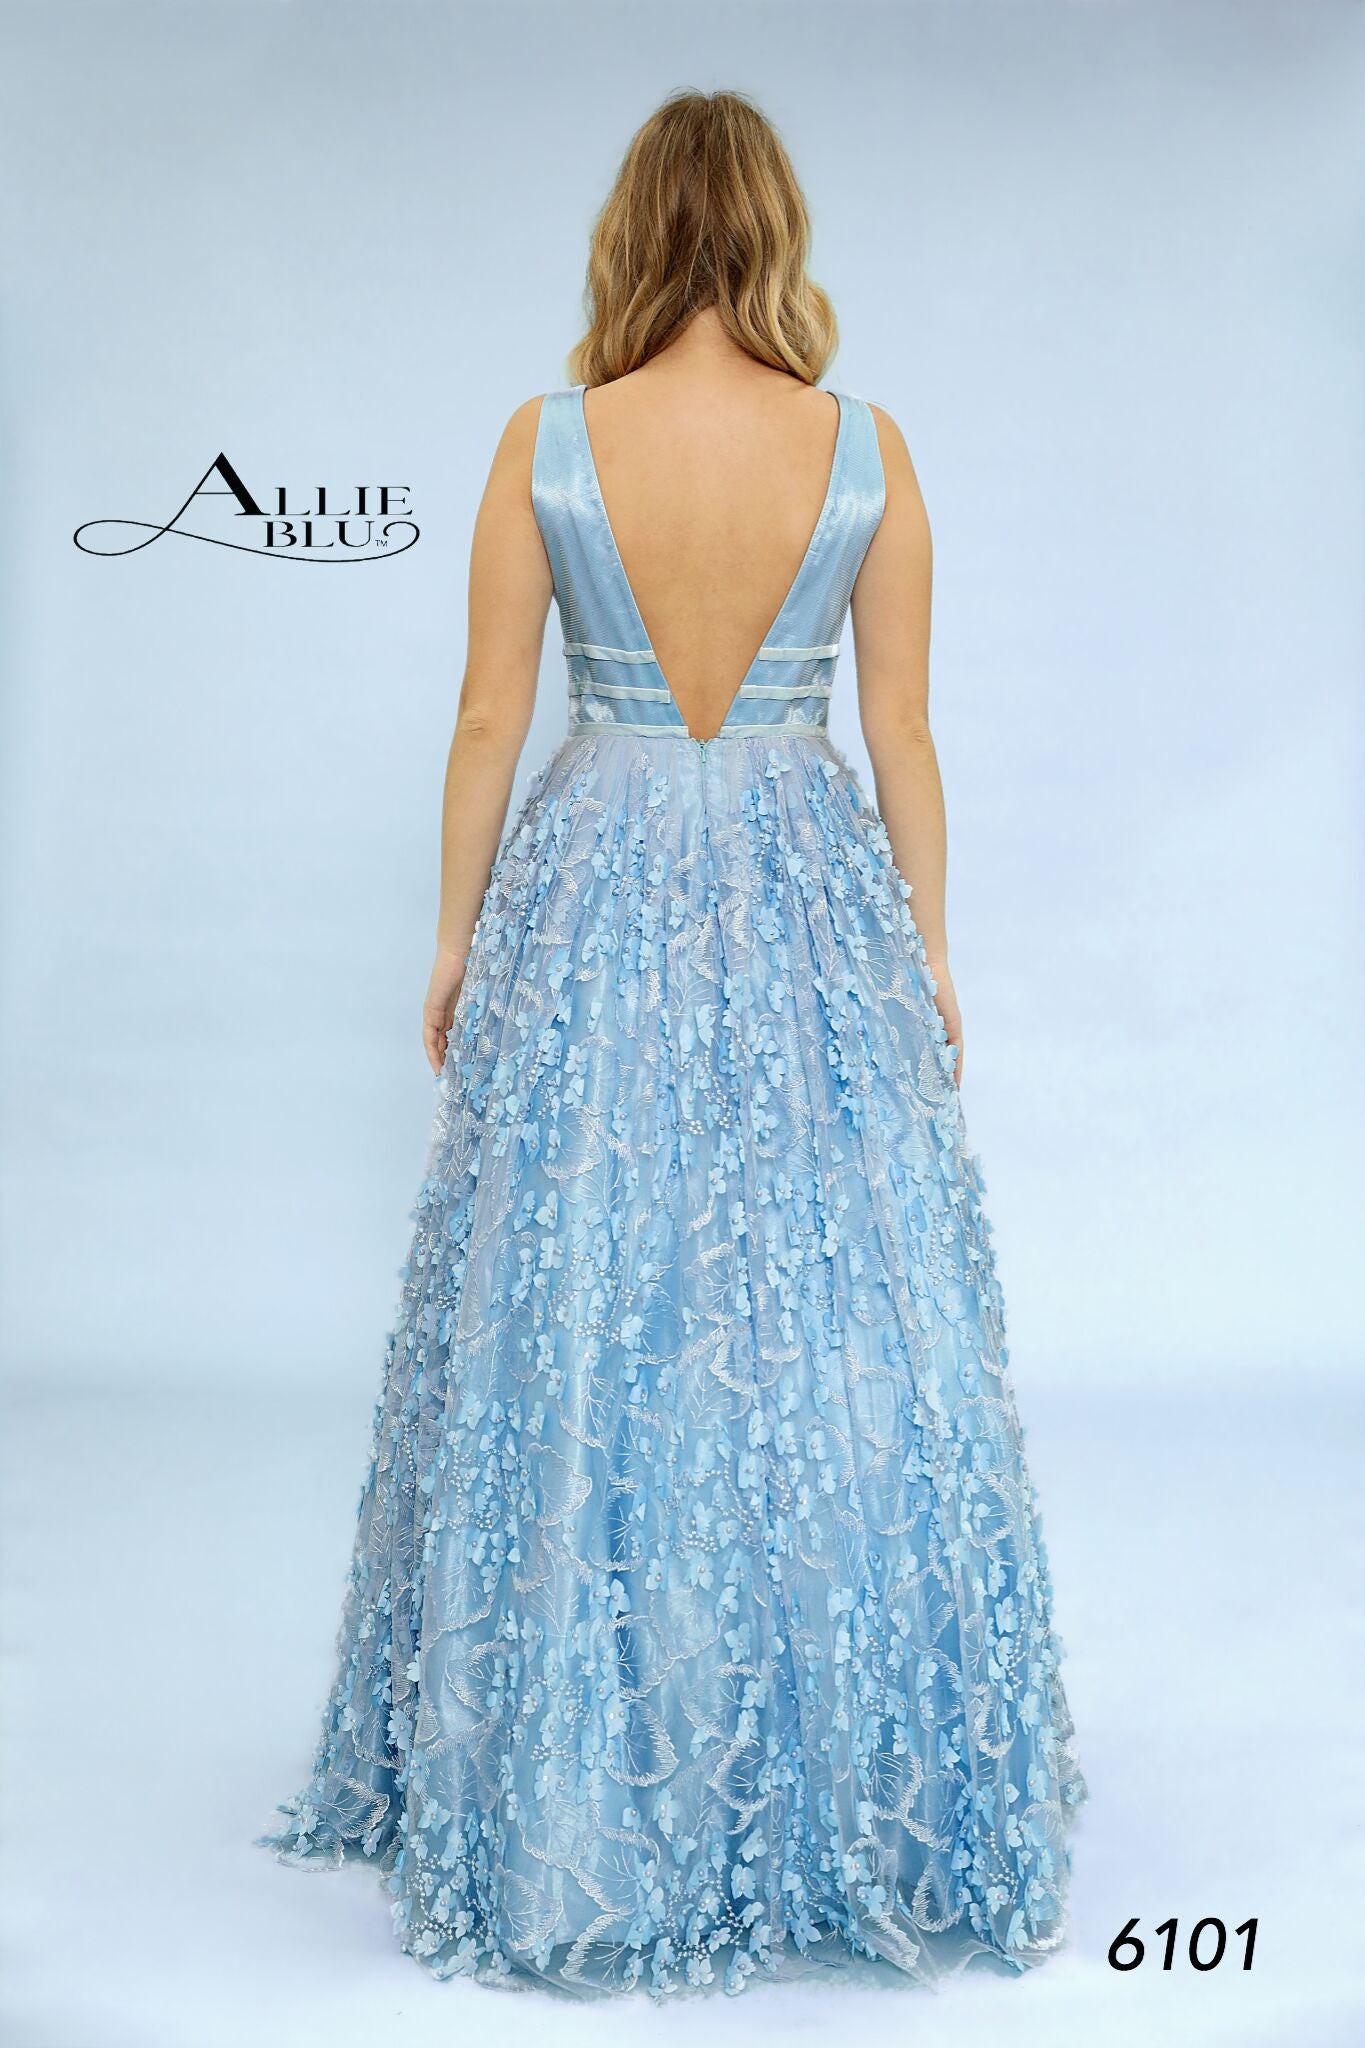 Allie Blu 6101 size 10 Peach floral applique prom dress Ballgown lace